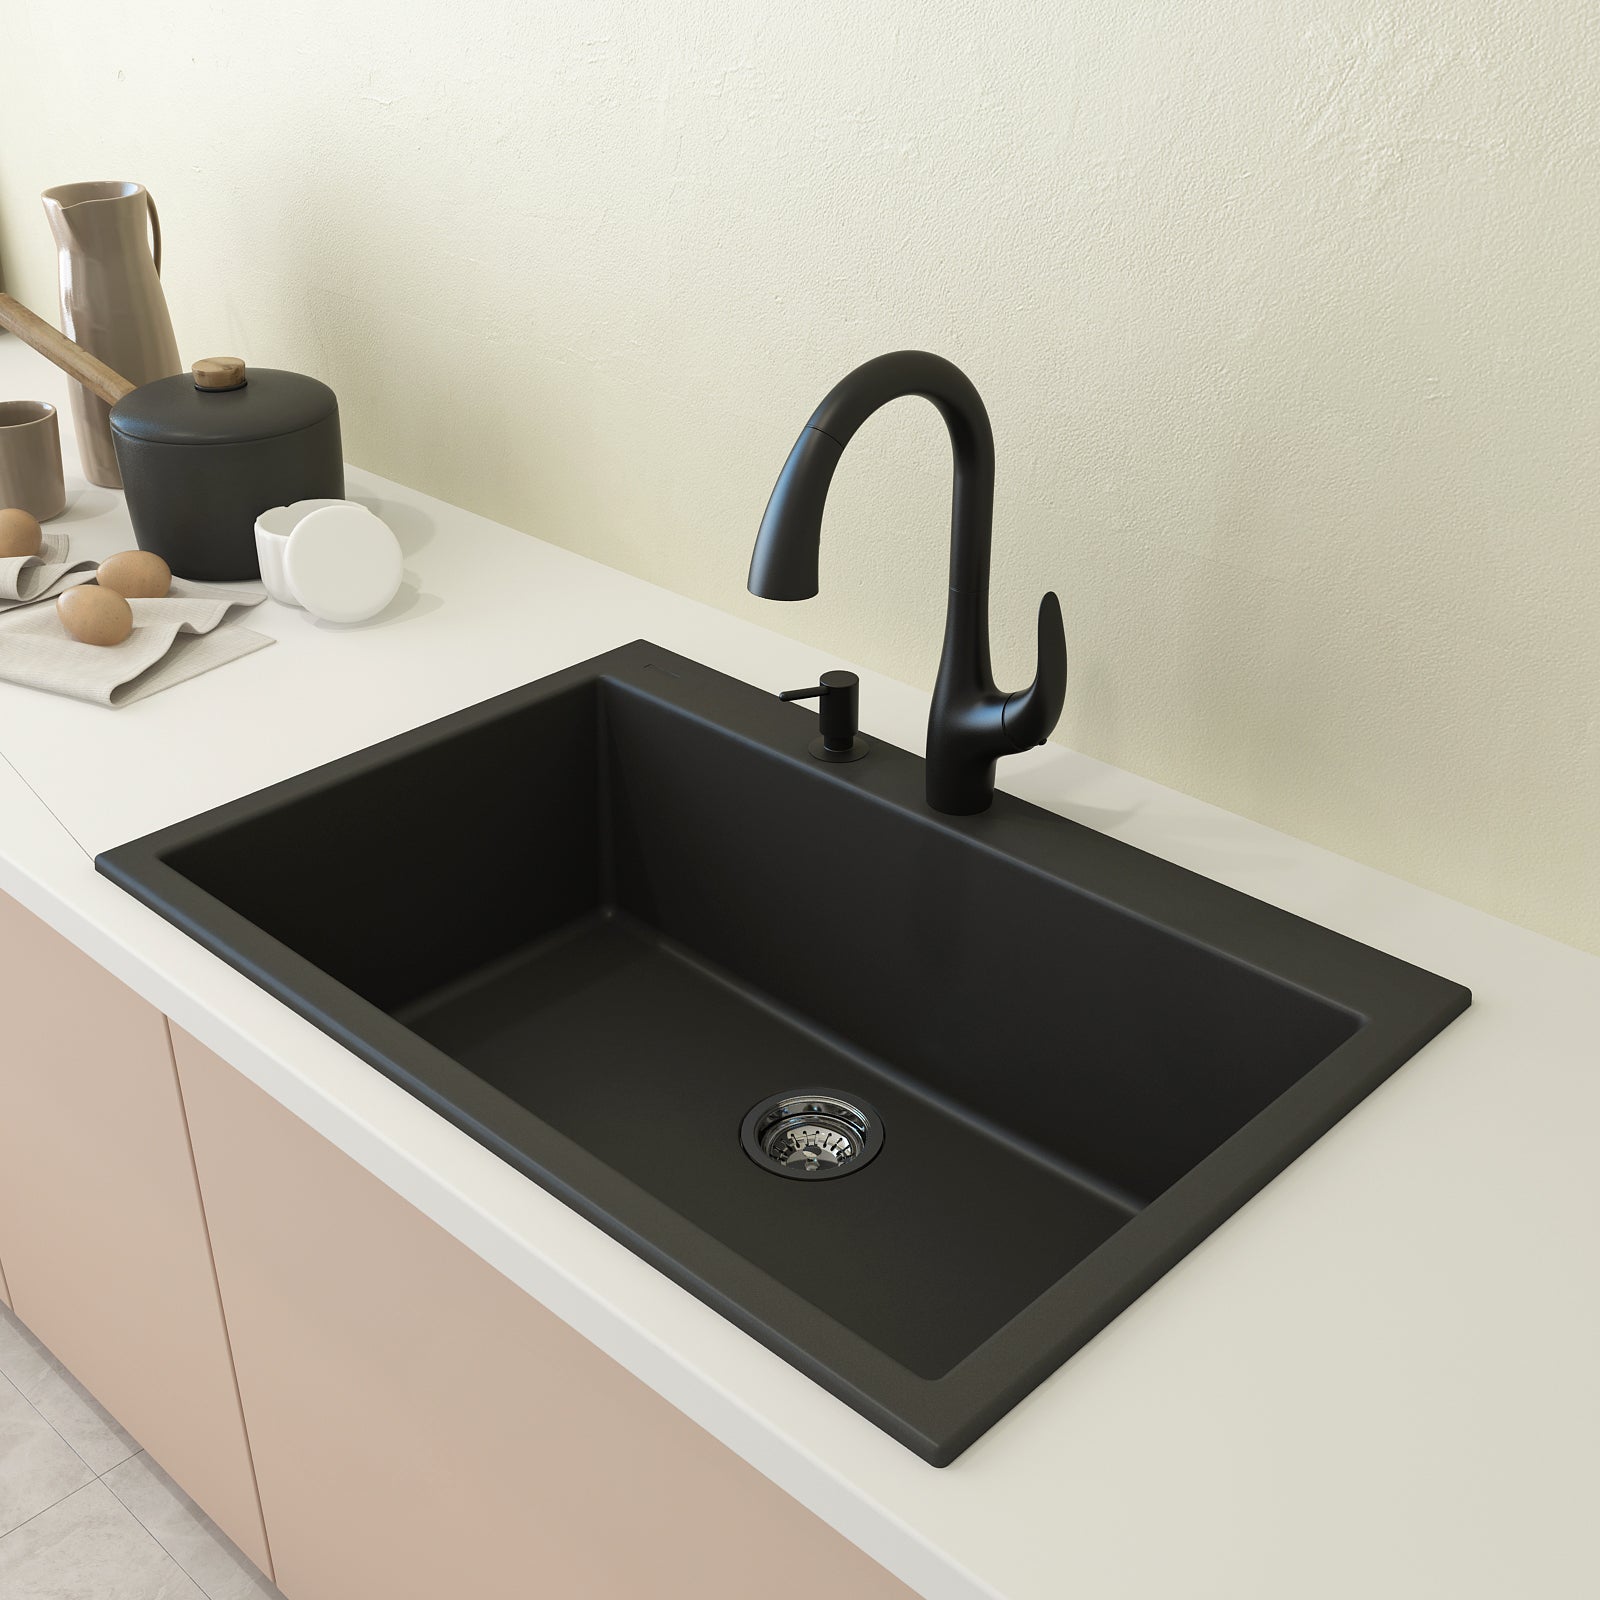 BOCCHI Levanzo 20 Dual-Mount Single Bowl Granite Composite Kitchen Sink with Drain Board, Matte Black